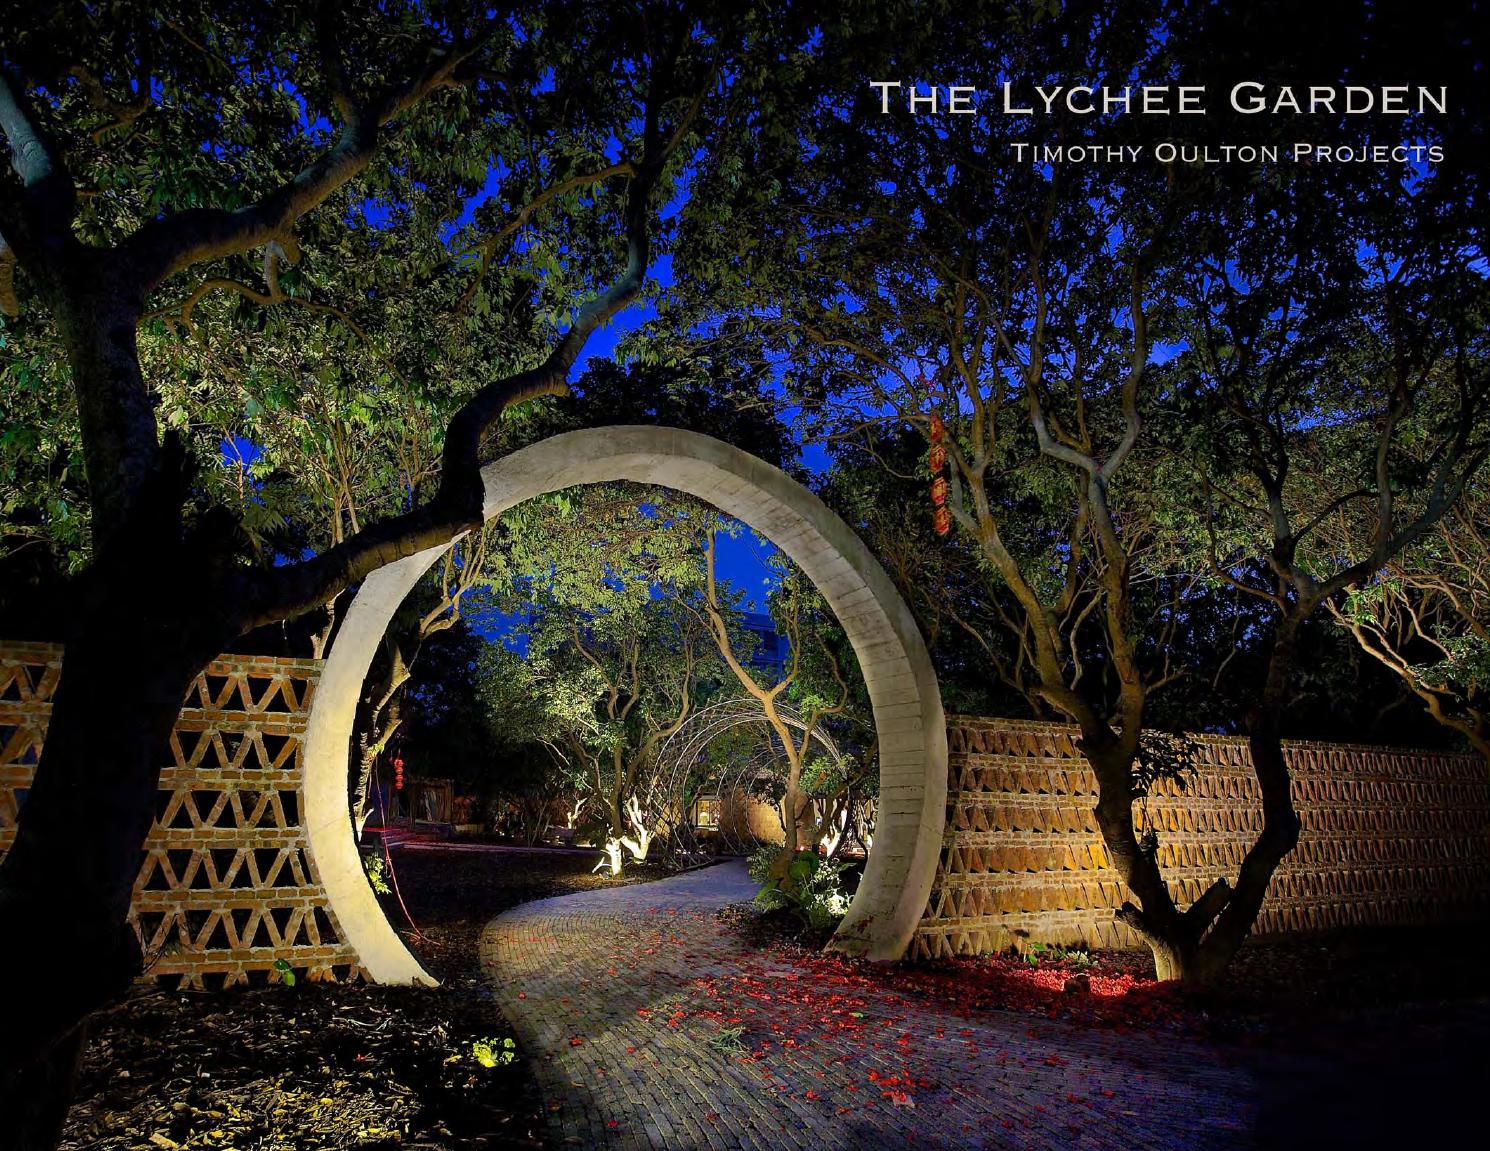 The Lychee Garden - A hidden paradise for Timothy Oulton's design team